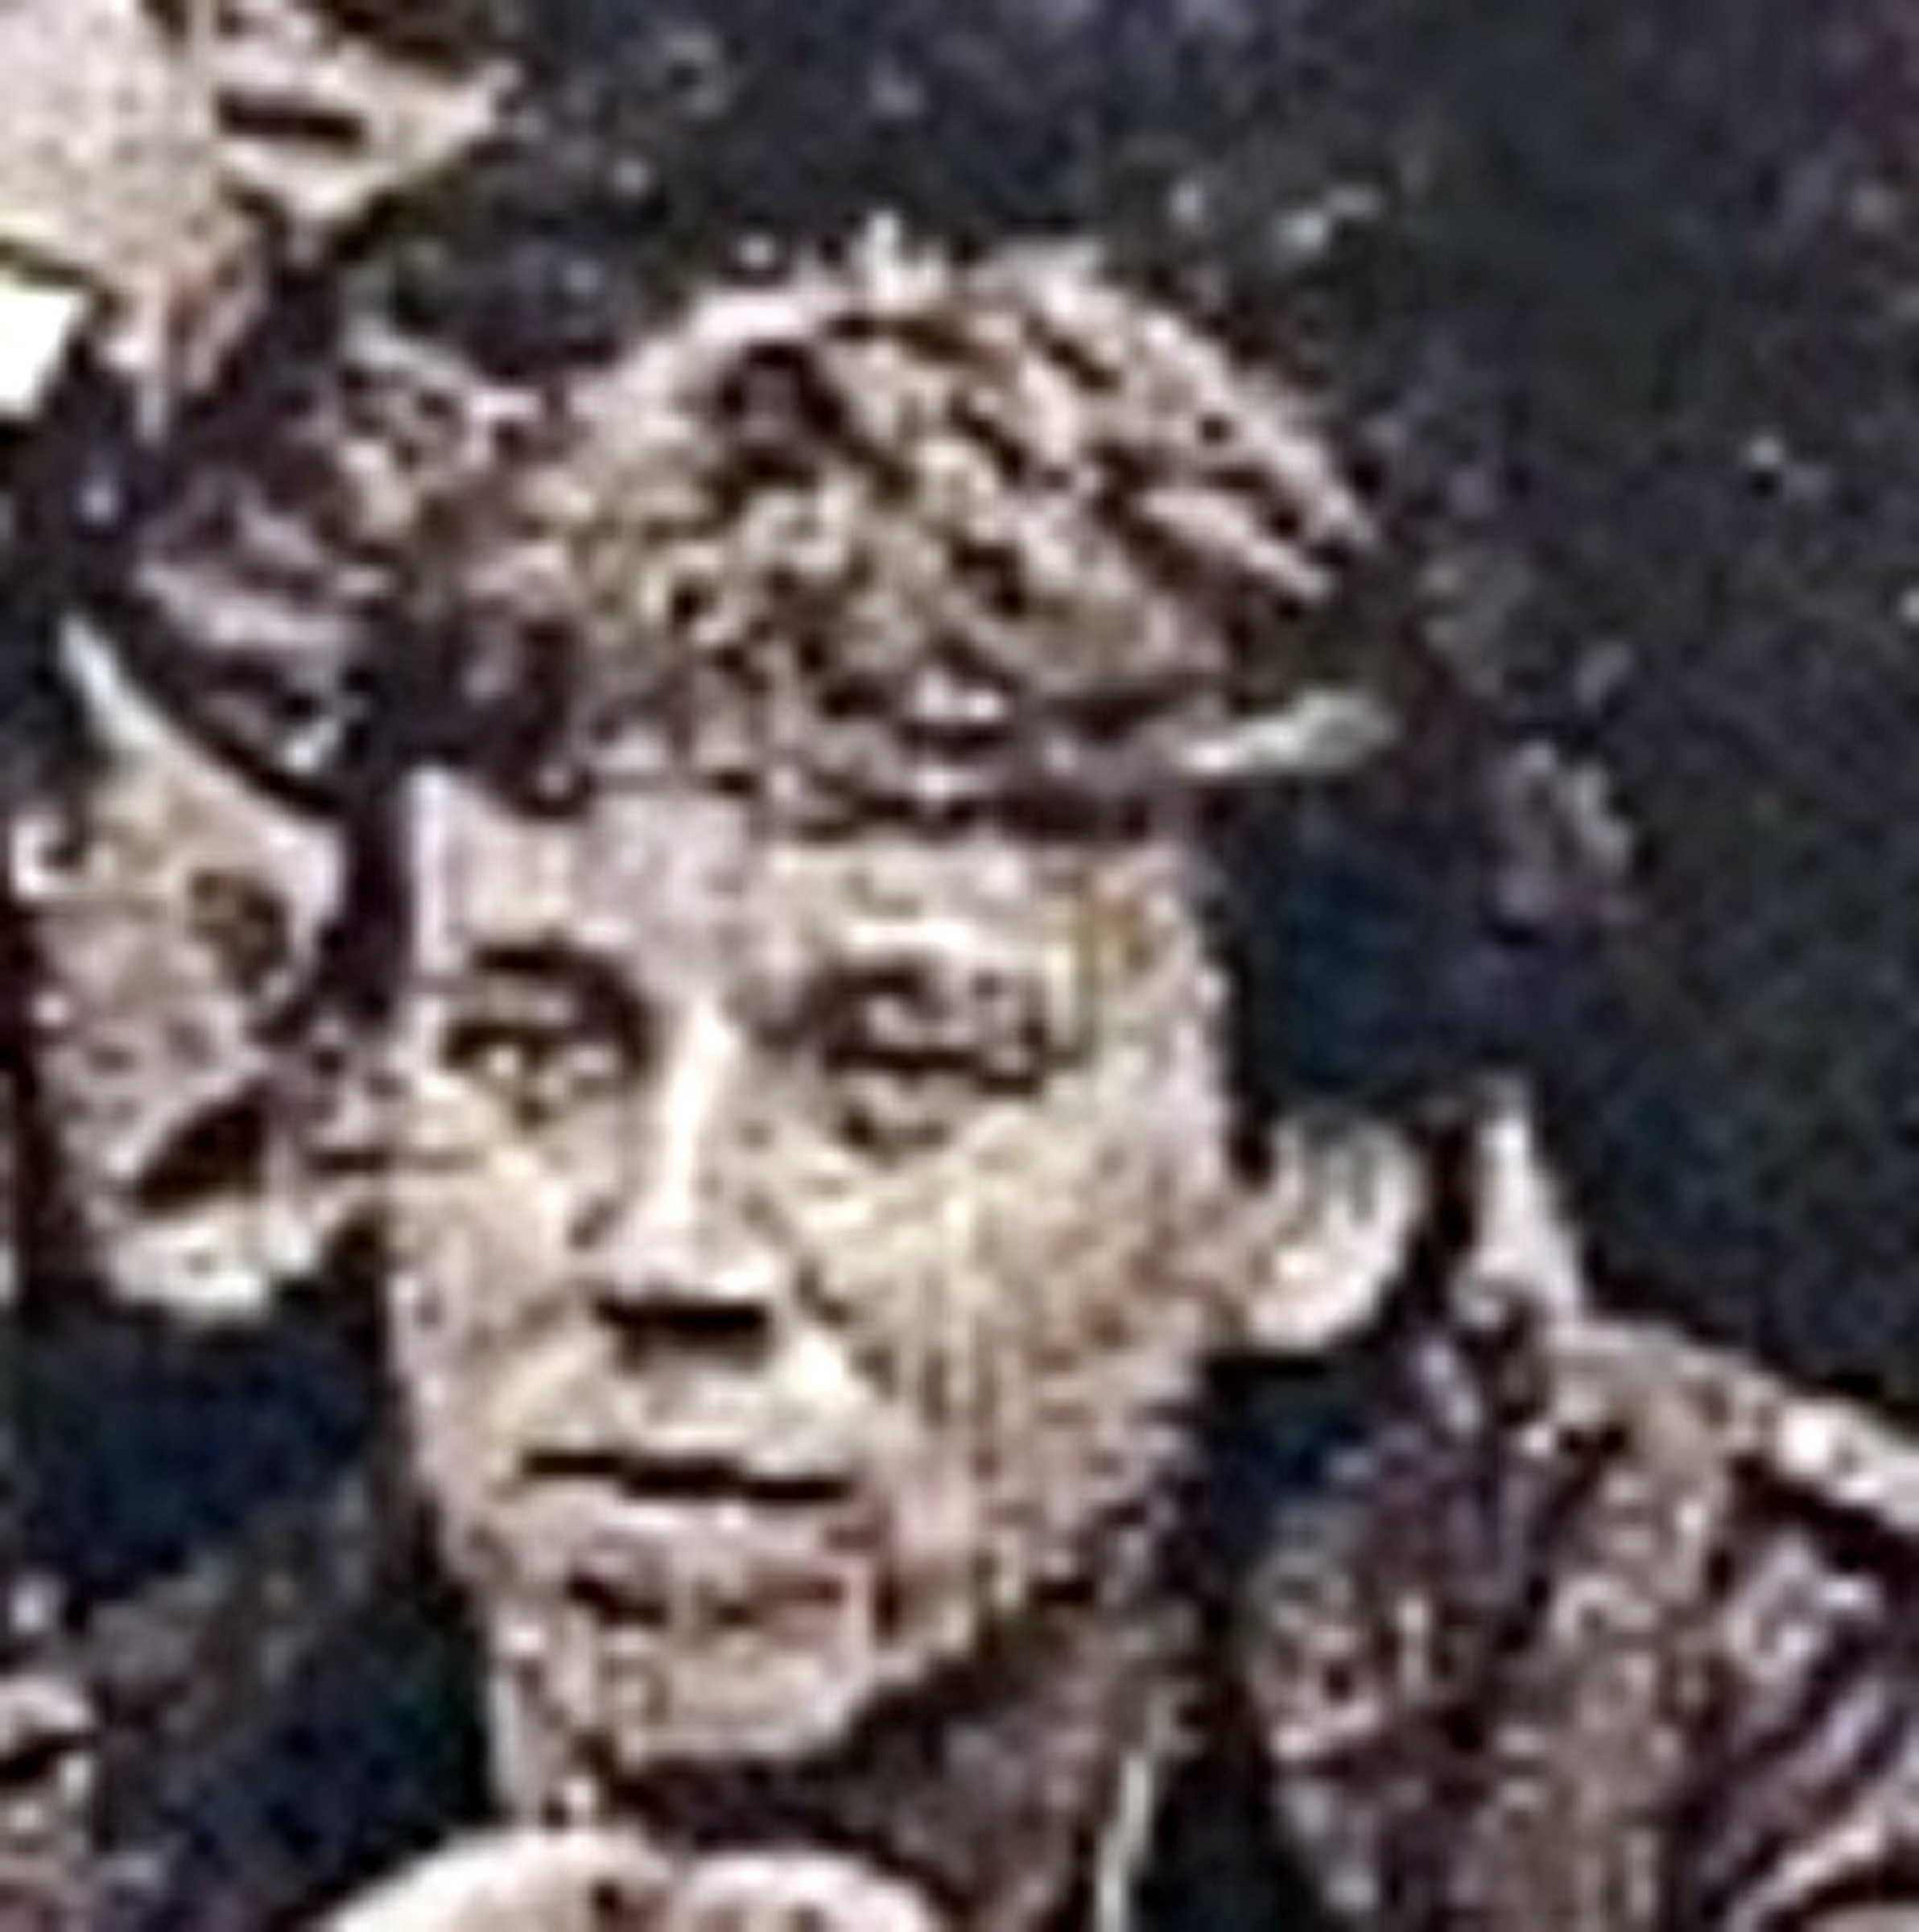 Pavel Jungmann